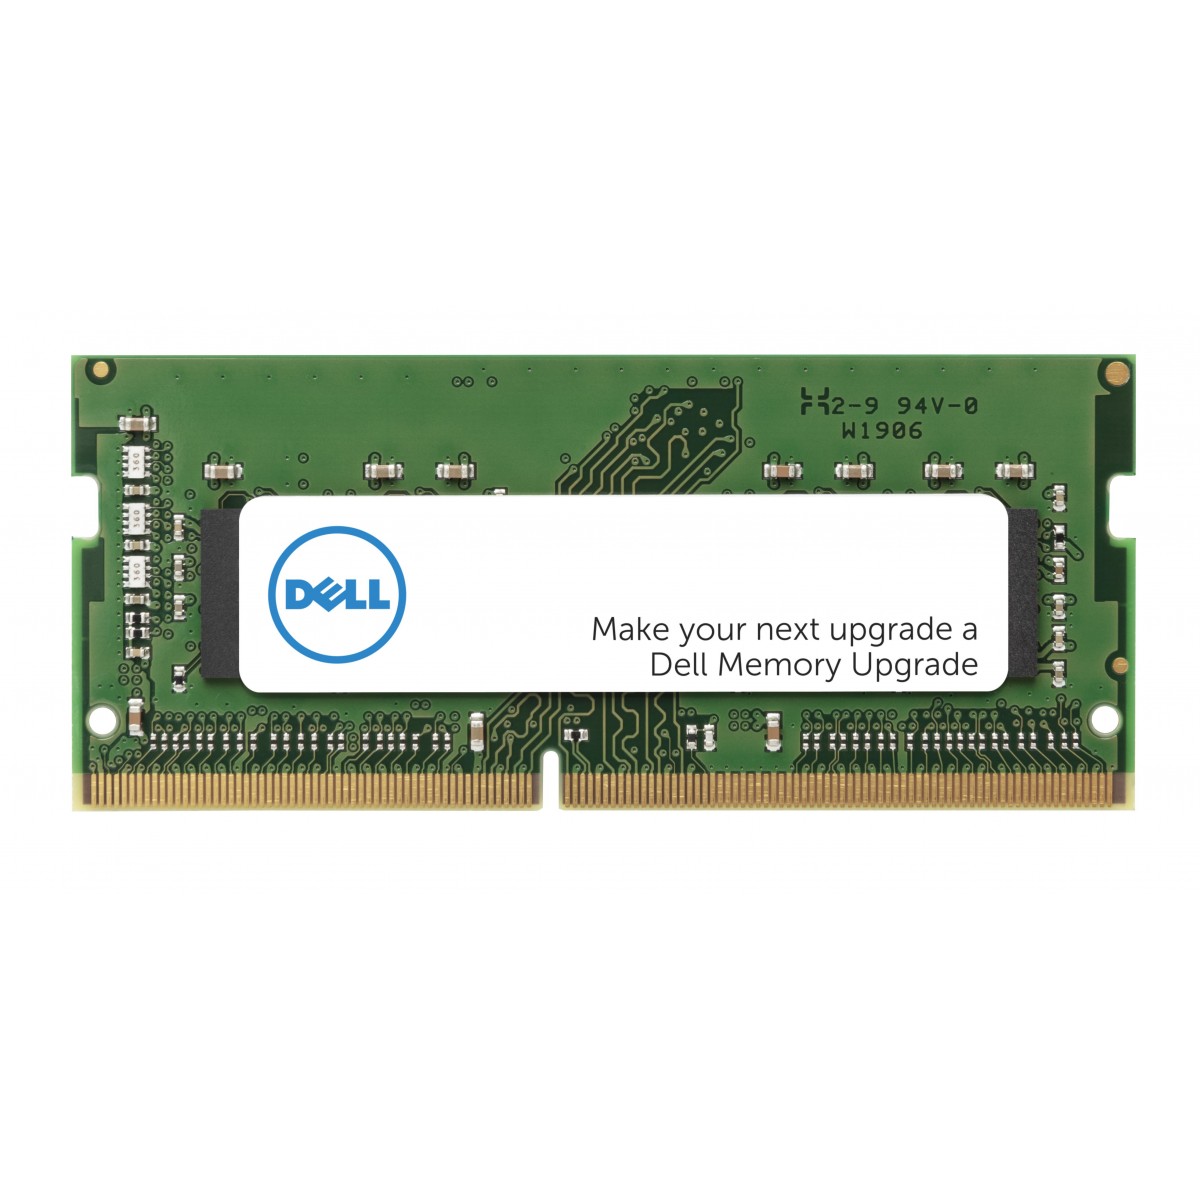 Dell 8GB PC4-17000 - 8 GB - 1 x 8 GB - DDR4 - 2133 MHz - 260-pin SO-DIMM - Green